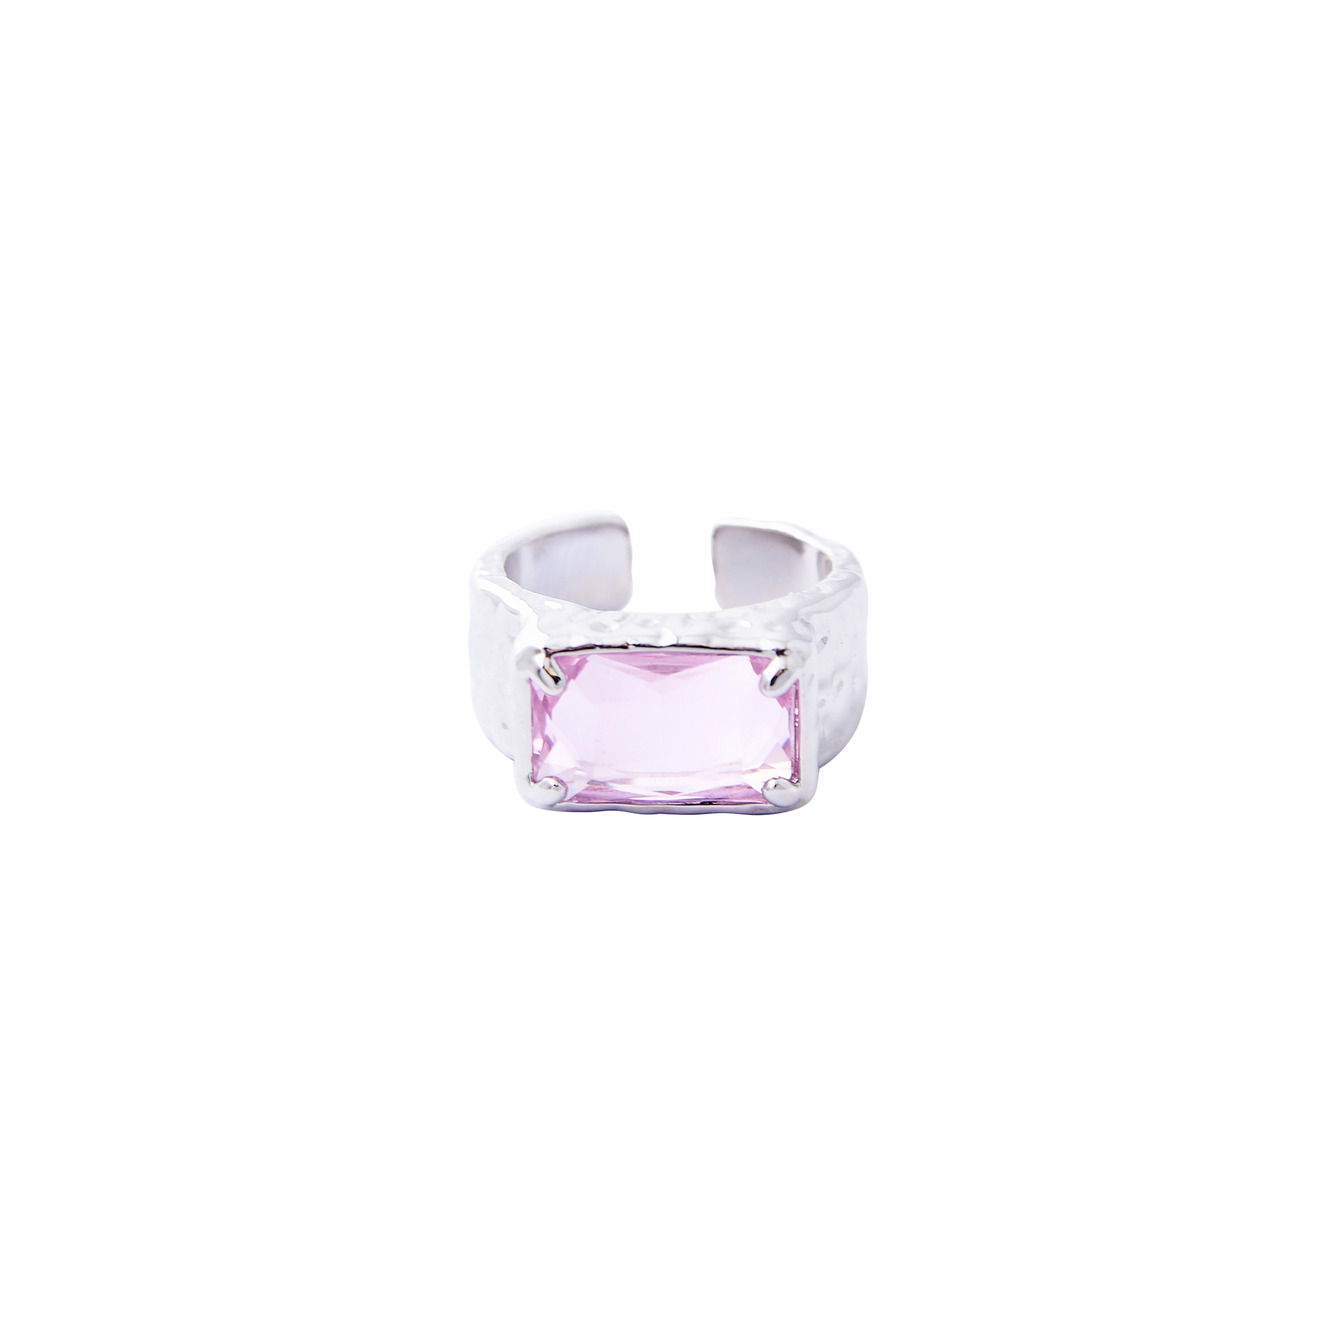 Herald Percy Серебристое кольцо с крупным розовым кристаллом herald percy серебристая цепочка с розовым кристаллом